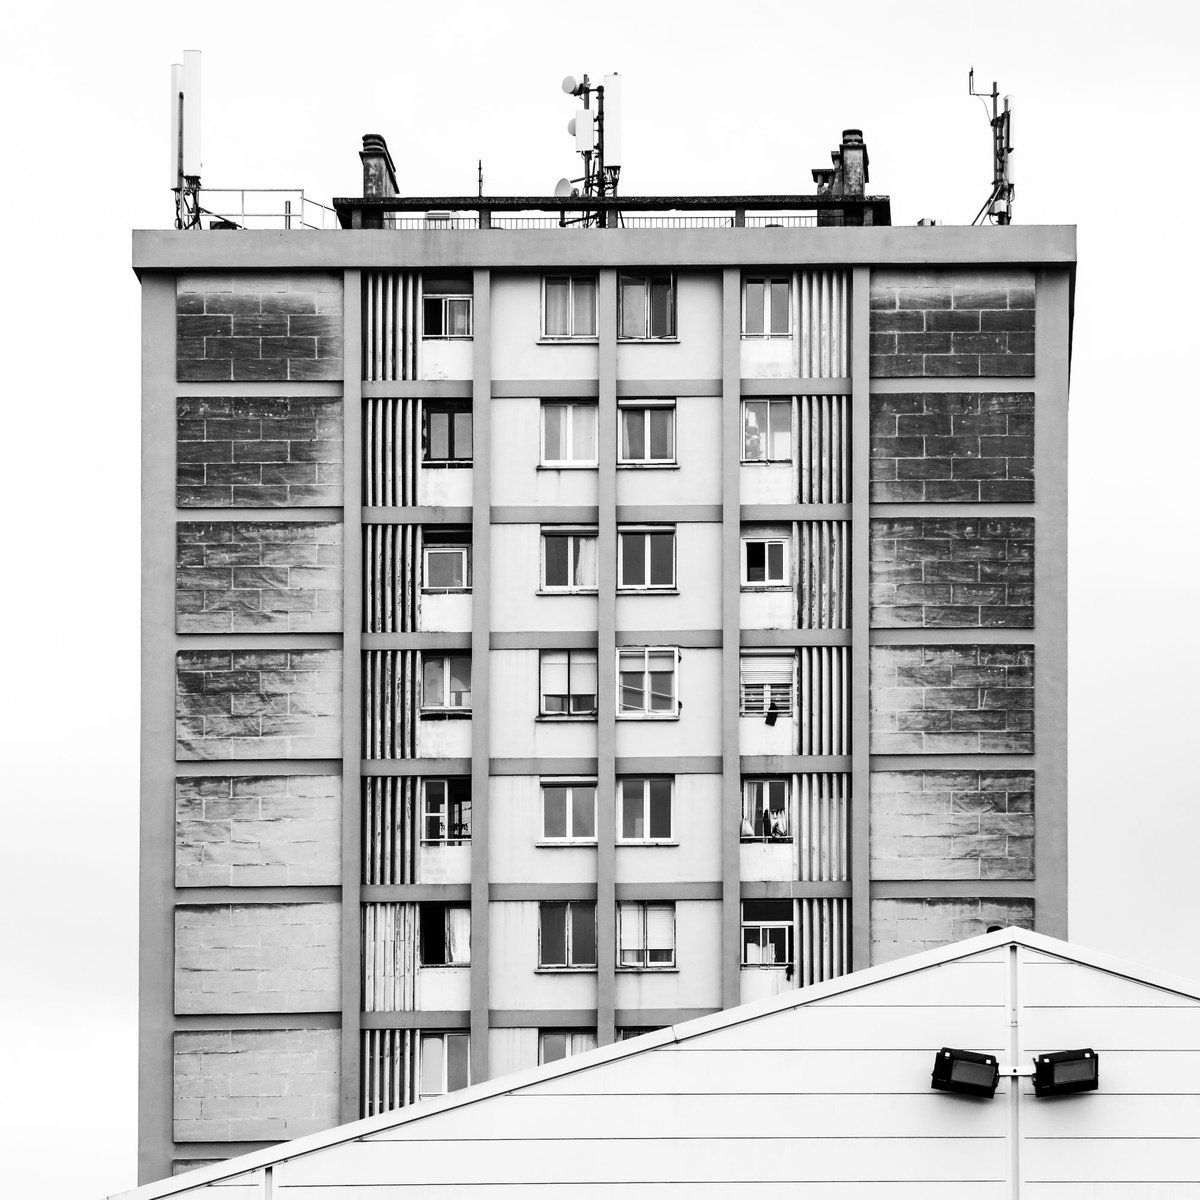 Immeuble, 100 x 100 cm by Lionel Le Jeune